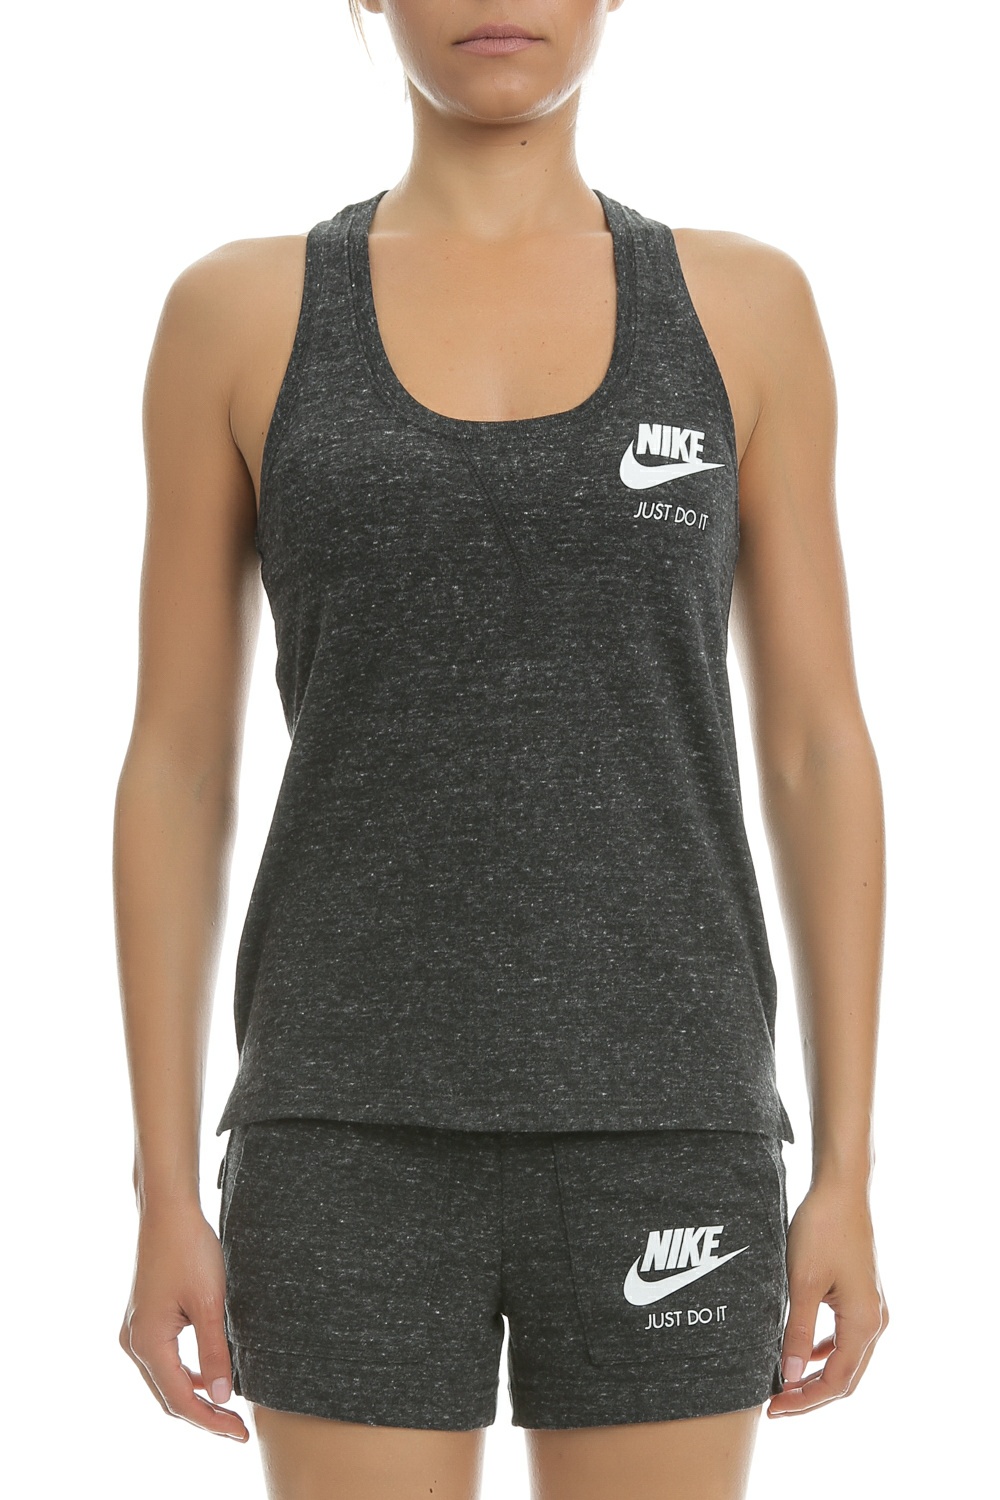 NIKE - Γυναικείο φανελάκι Nike ανθρακί Γυναικεία/Ρούχα/Αθλητικά/T-shirt-Τοπ